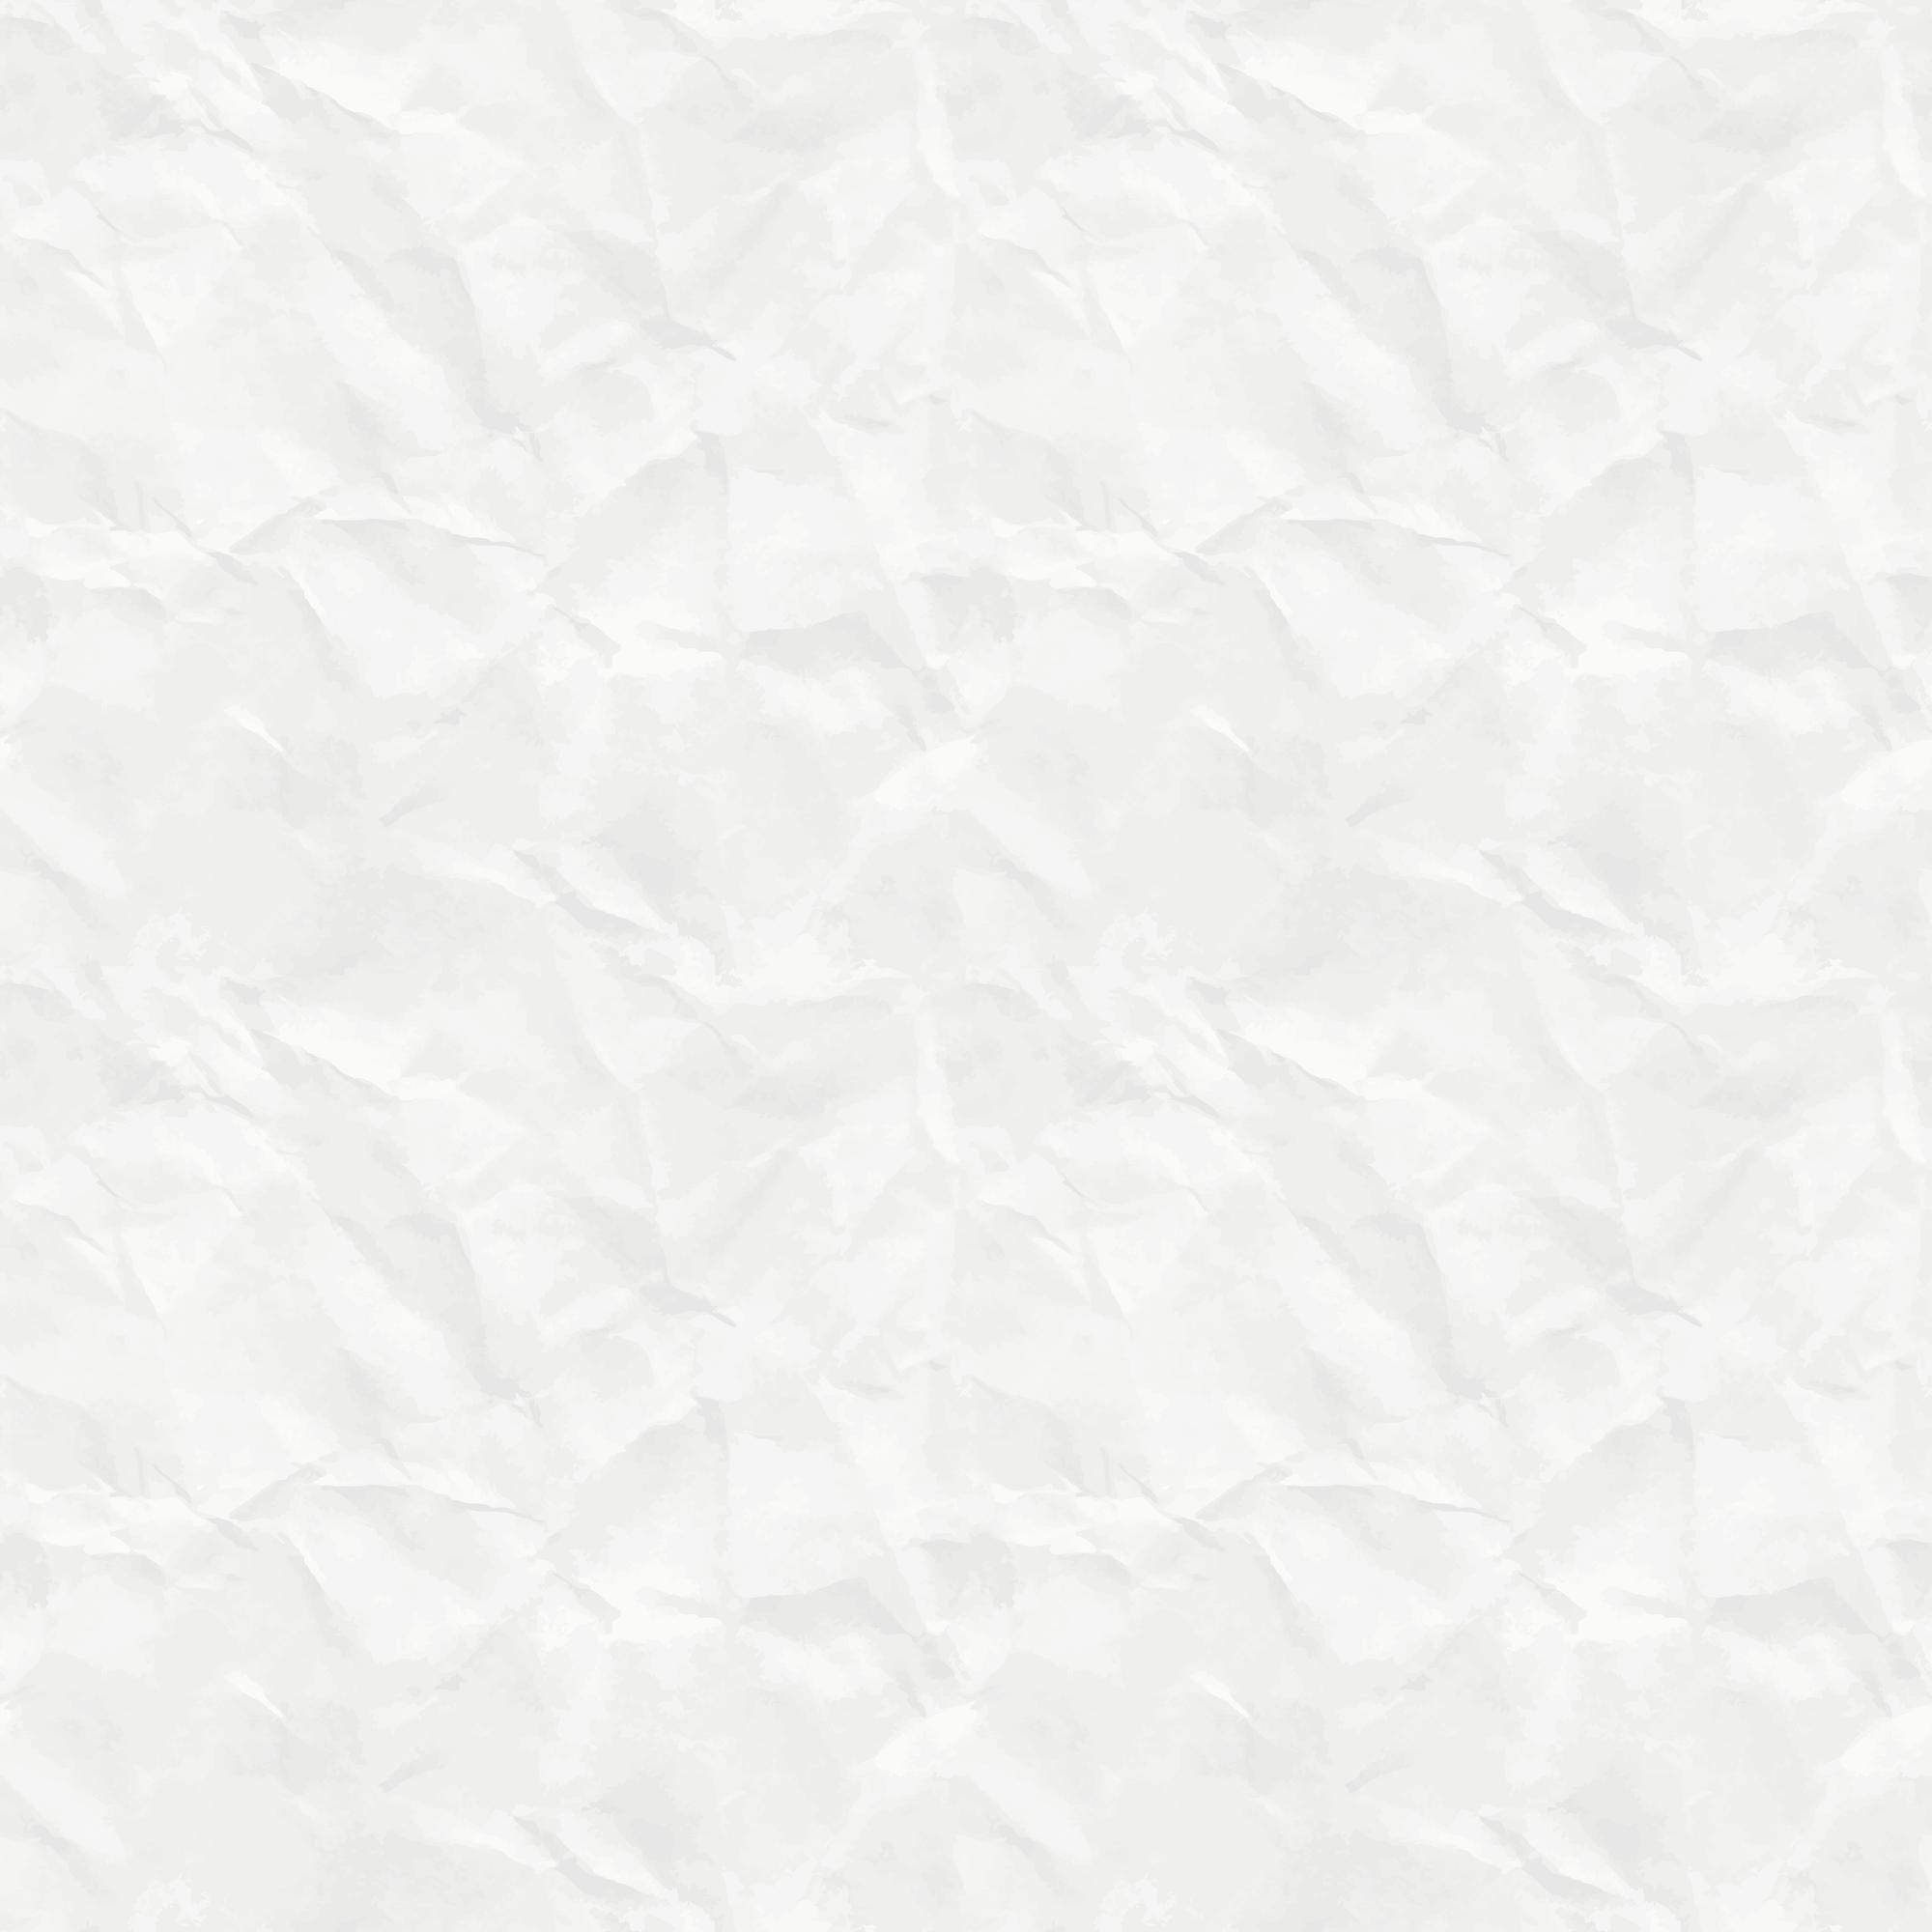 Vector giấy nhăn trắng (crumpled white paper vector): Mời bạn khám phá bộ sưu tập vector giấy nhăn trắng độc đáo và đầy cảm hứng. Giấy nhăn trắng tạo nên một đường nét vô cùng độc đáo và tuyệt vời cho các thiết kế của bạn. Với bộ sưu tập này, bạn sẽ có được những cảm hứng mới mẻ và độc đáo cho những dự án sáng tạo của bạn.